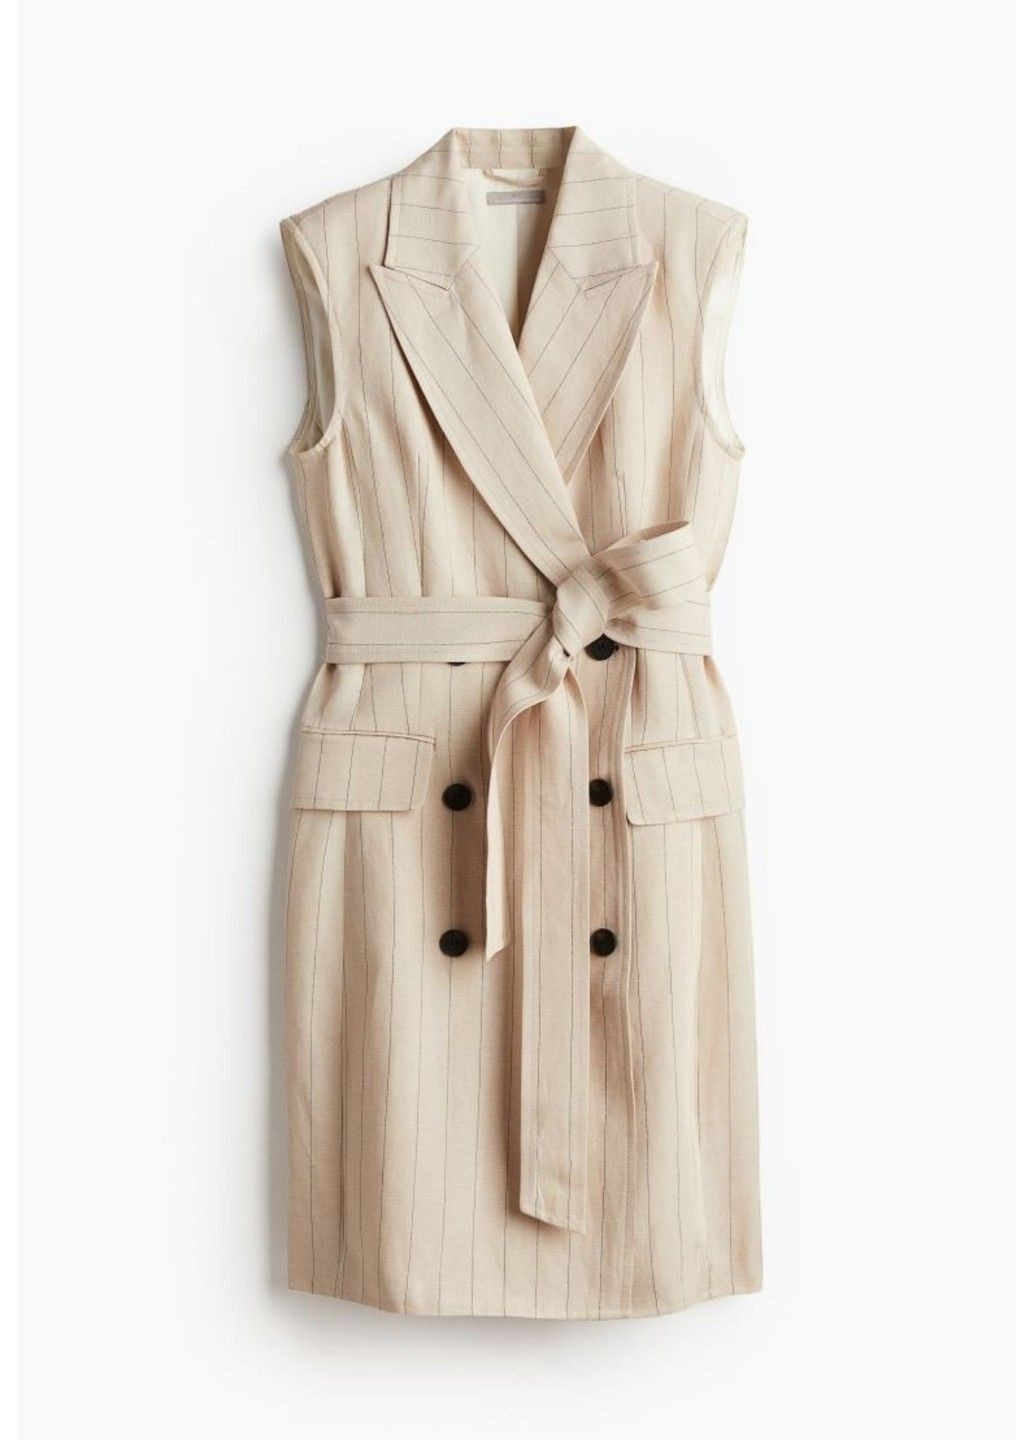 Світло-бежева ділова жіноча лляна сукня крою як піджак від another mix н&м (56923) s світло-бежева H&M